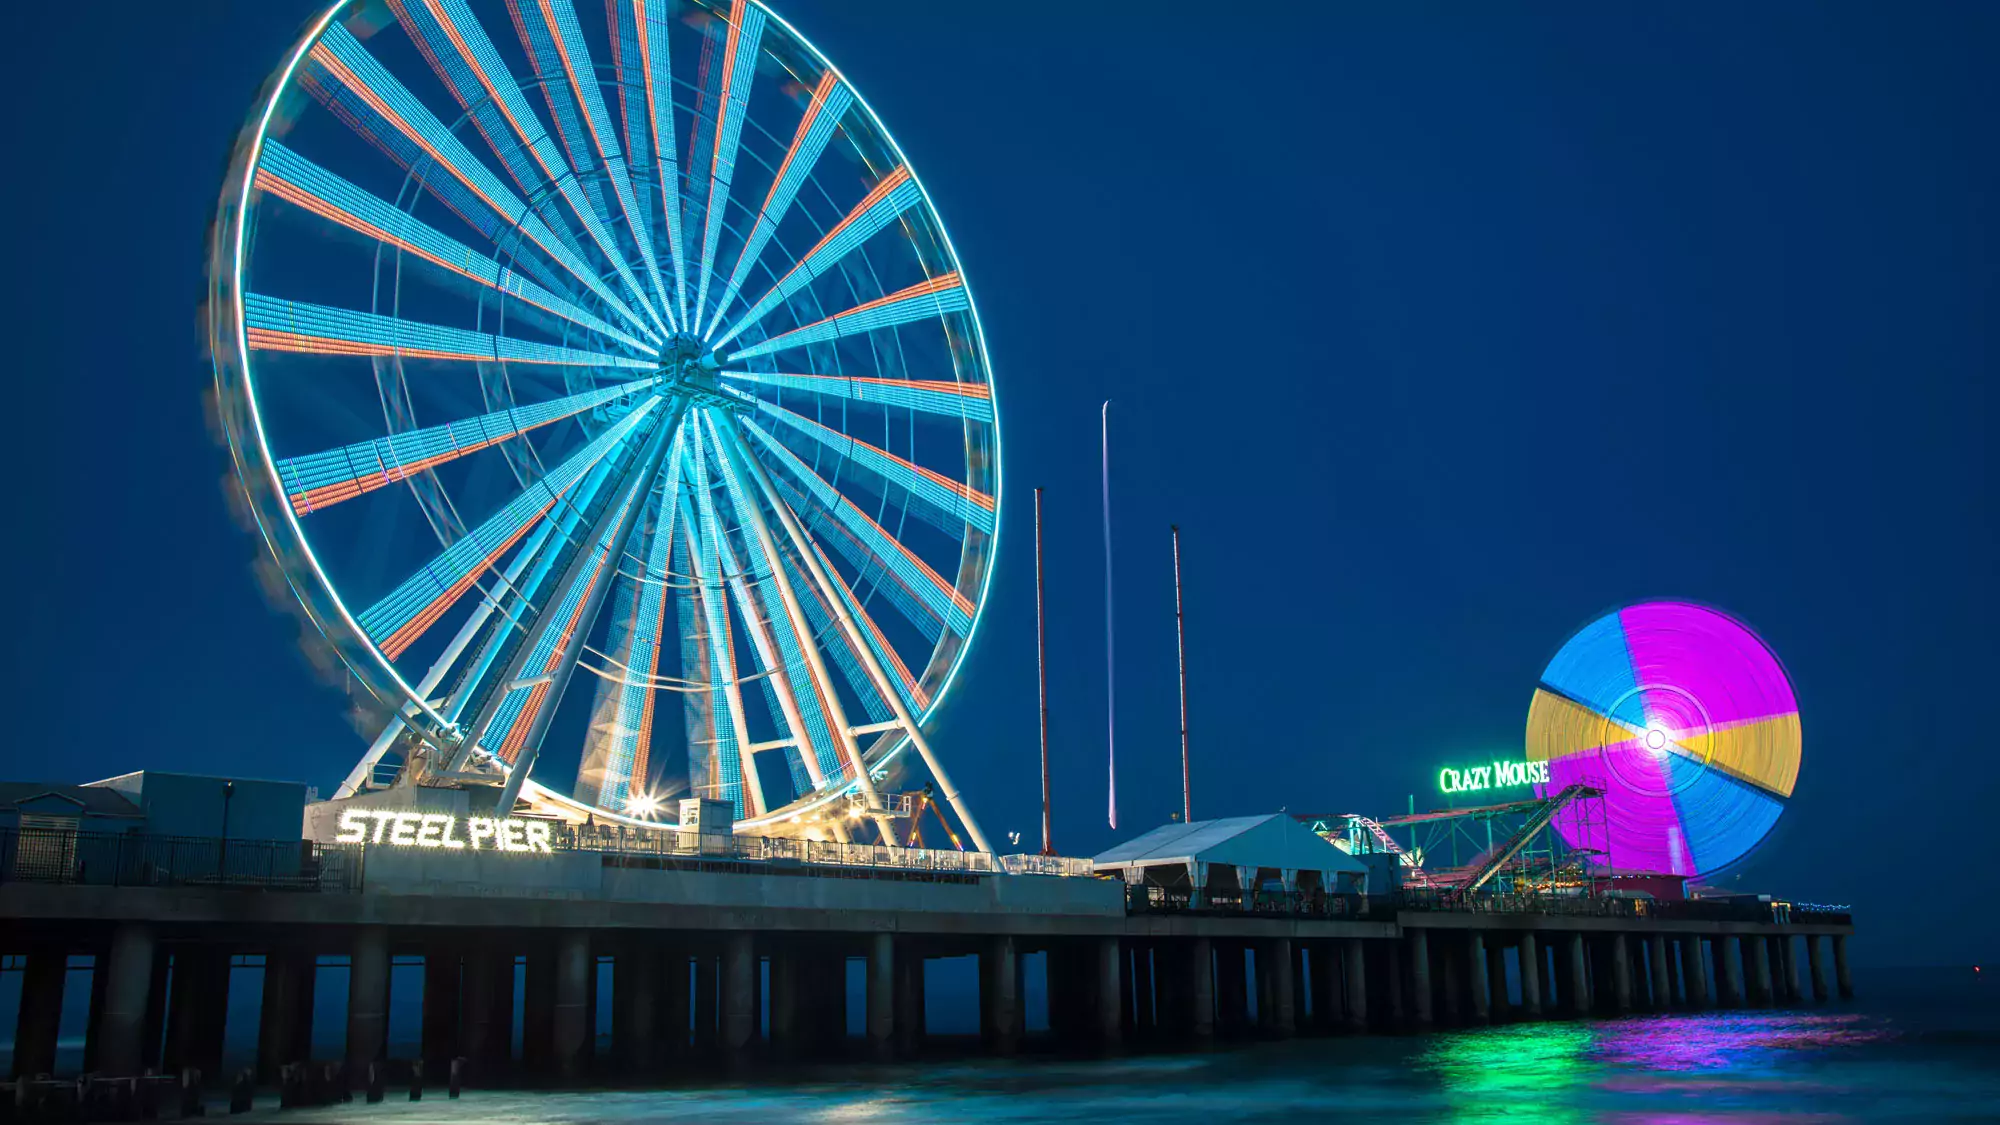 Steel Pier Ferris Wheel at Atlantic City Boardwalk